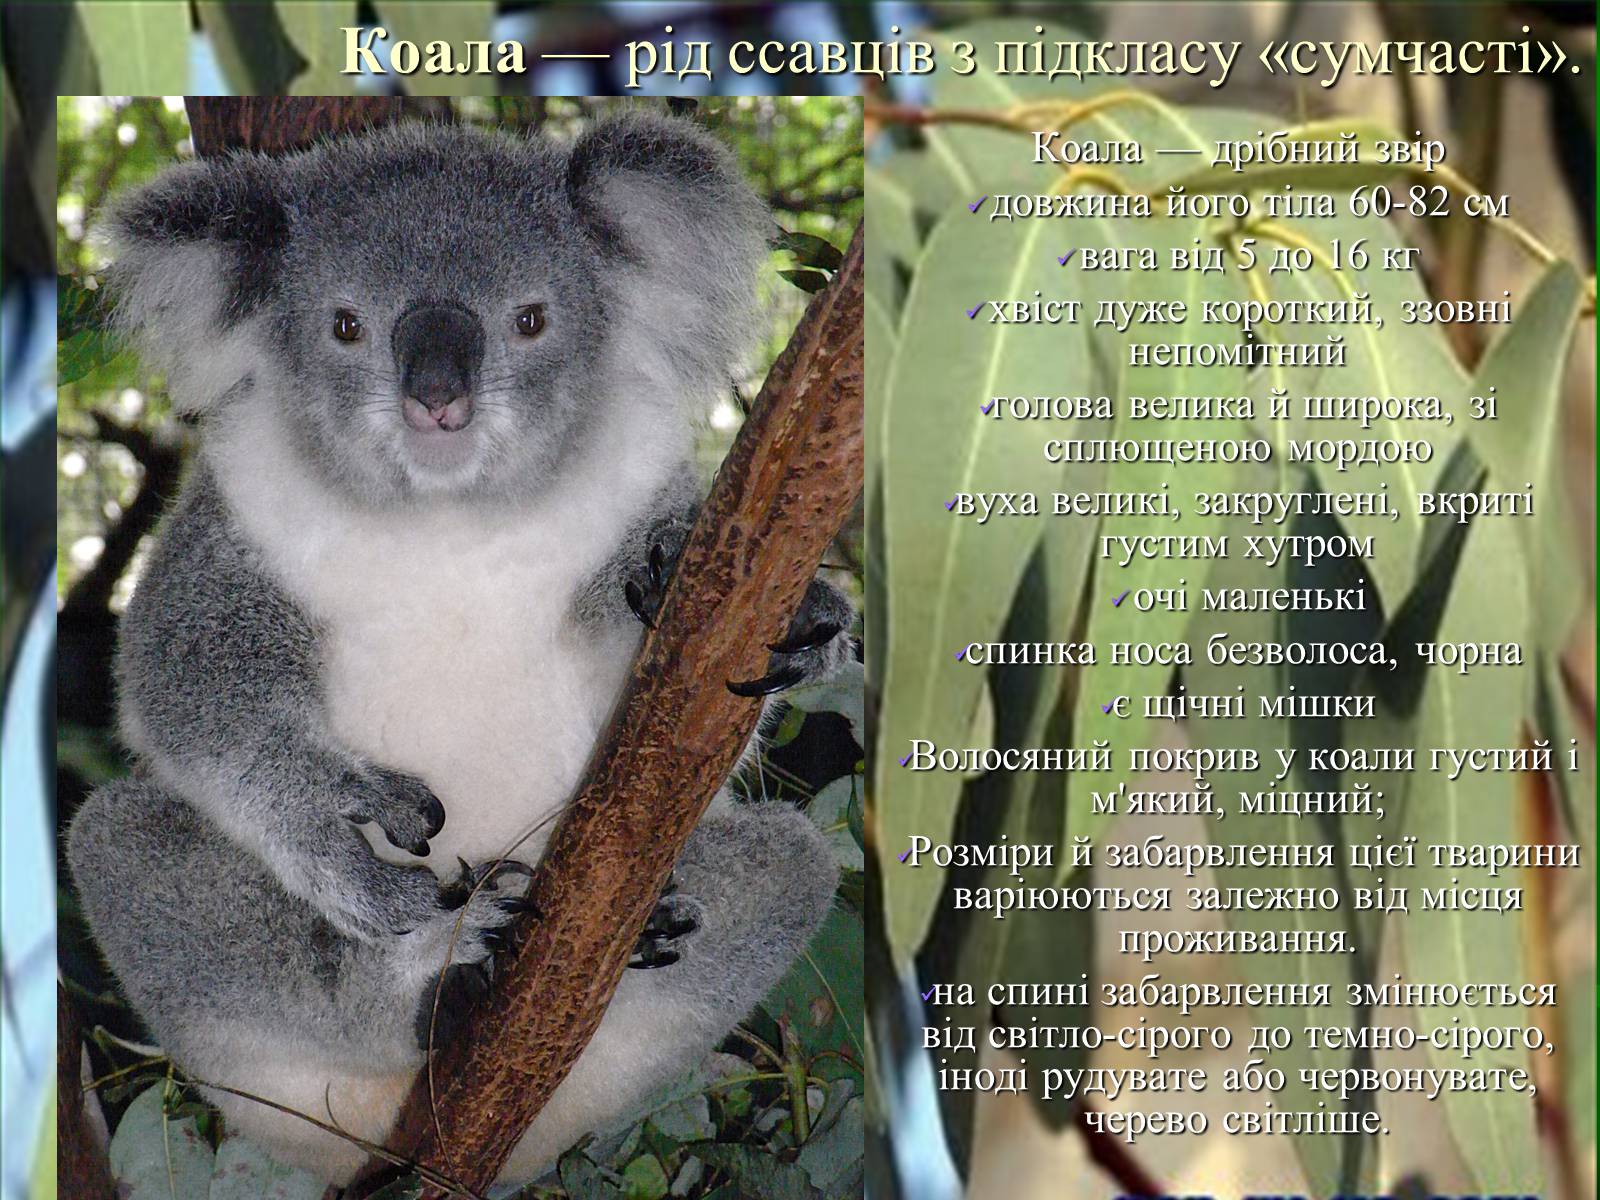 Коала кратко. Загадки о животных для детей про коалу. Коала информация для детей. Коала проект. Научный факт о коалах.